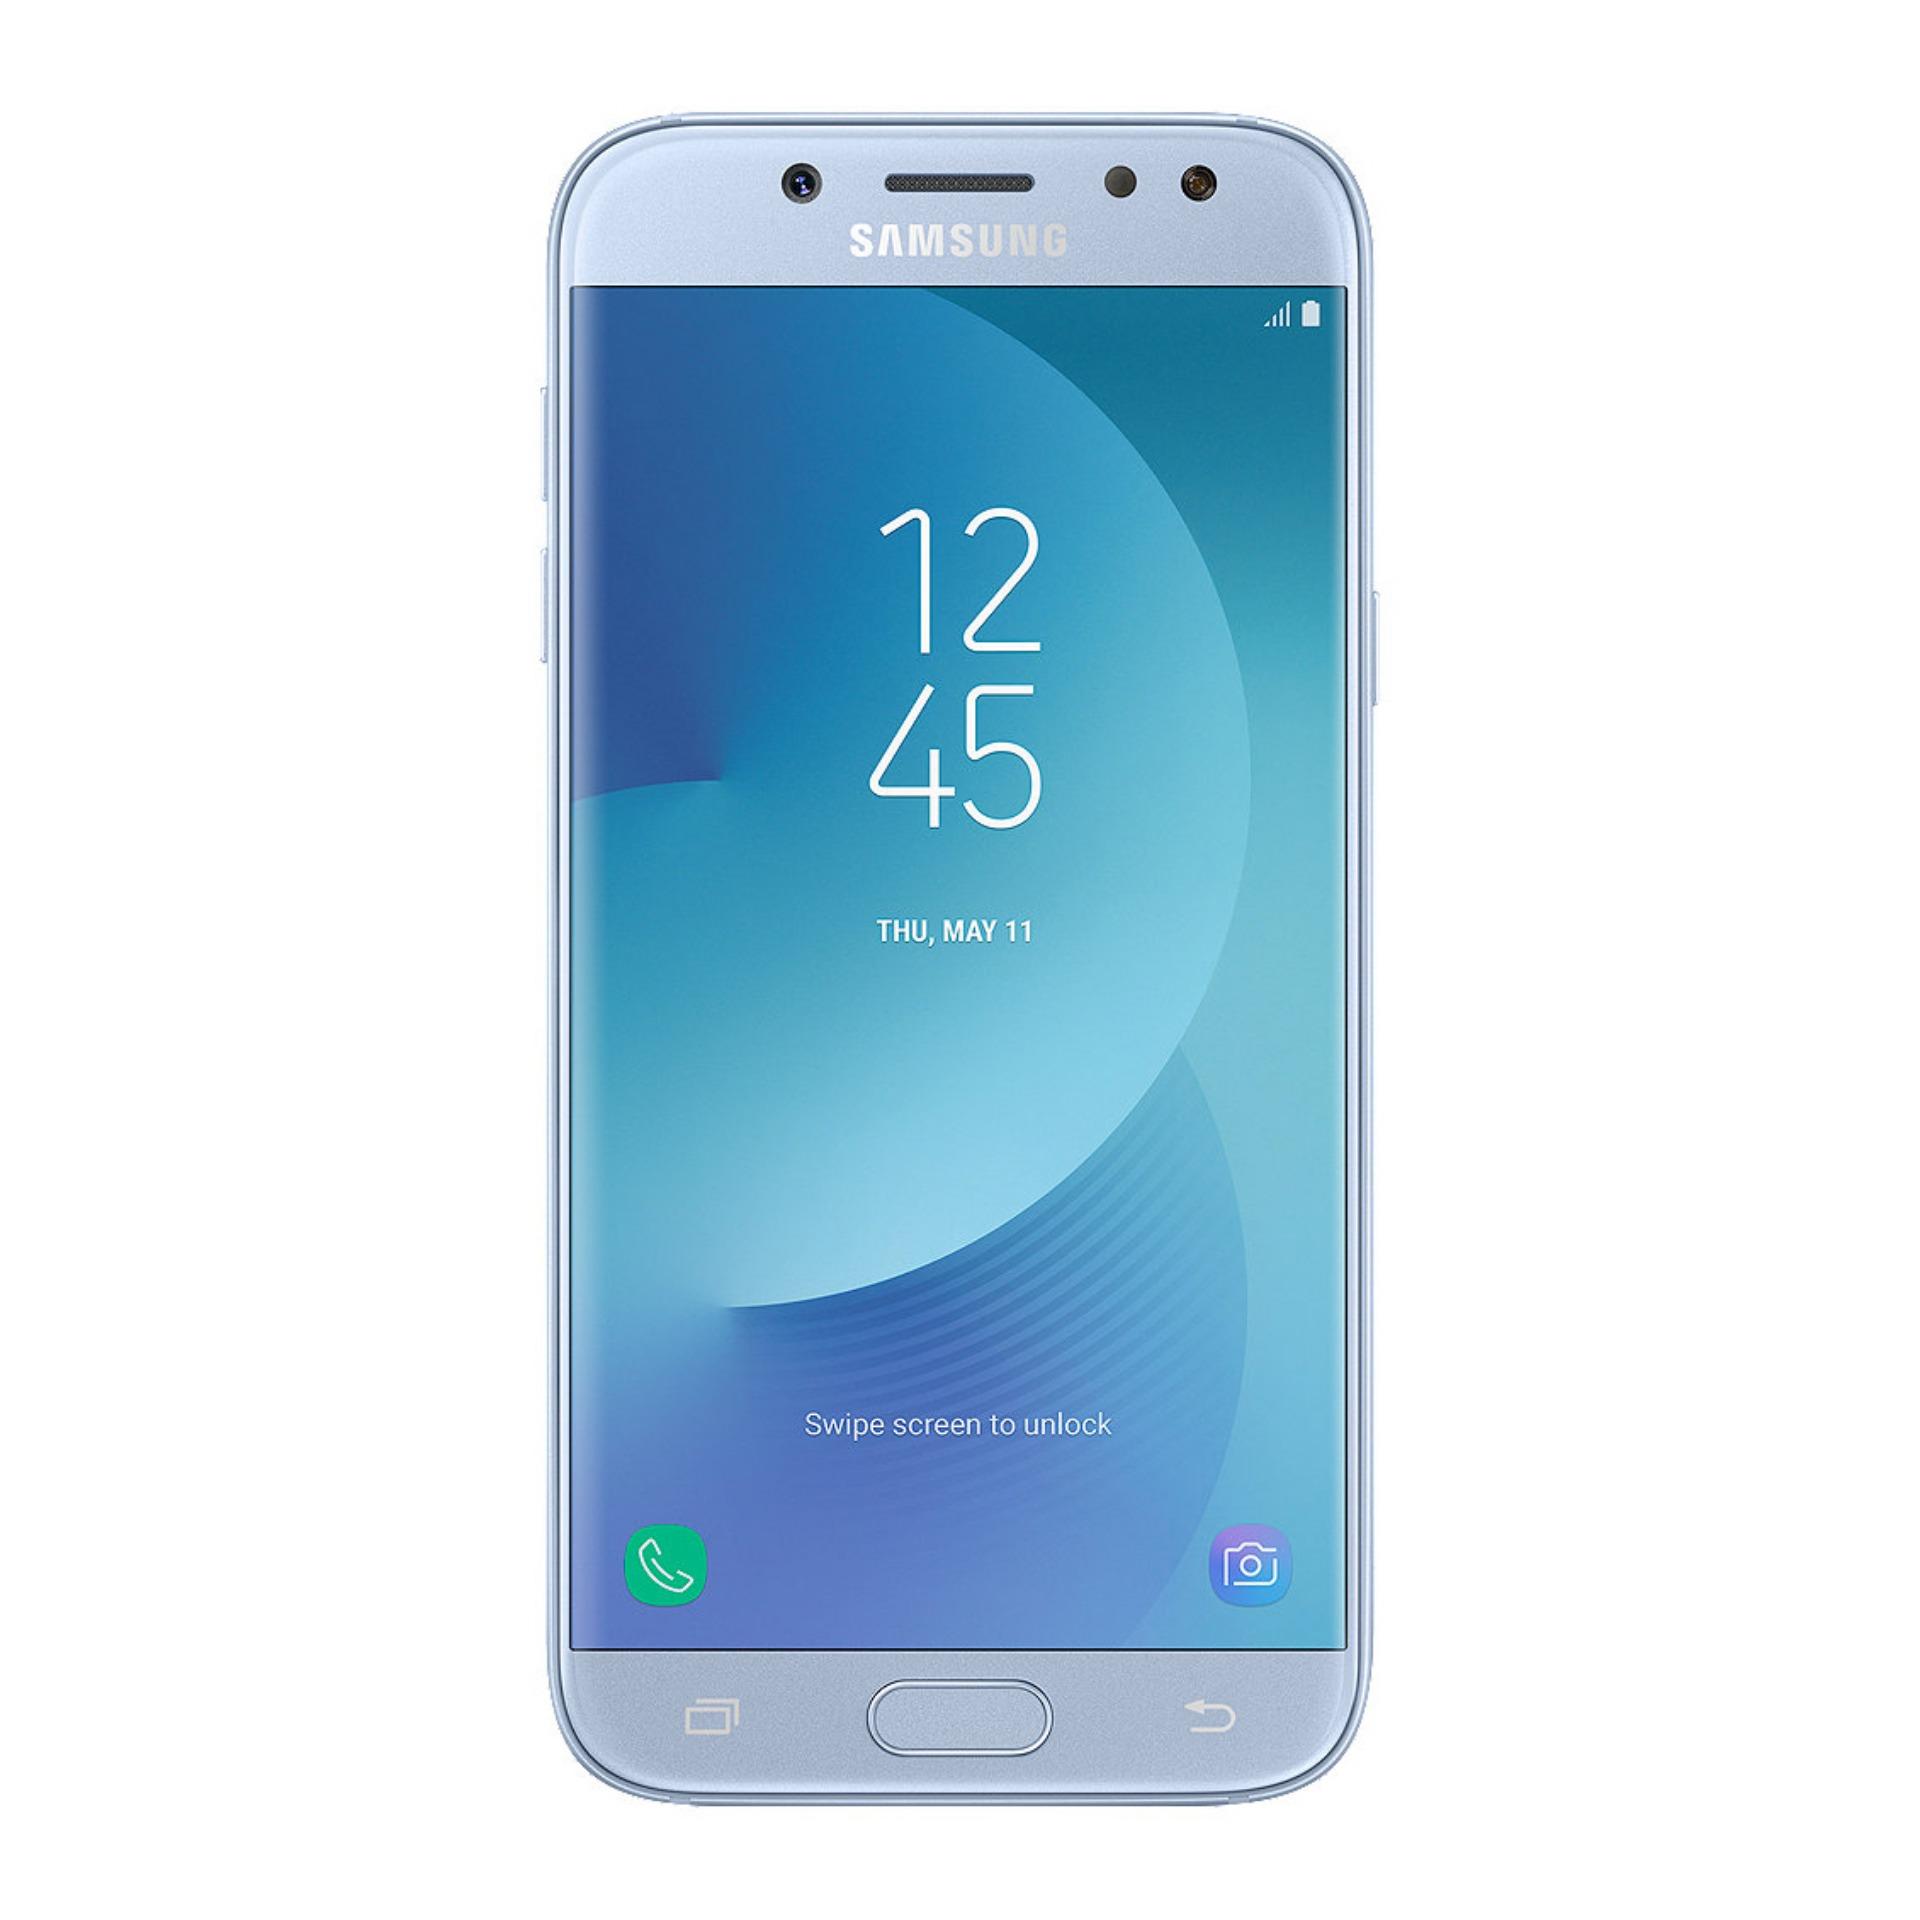 Samsung Galaxy J3 Pro - Blue Silver - 16GB